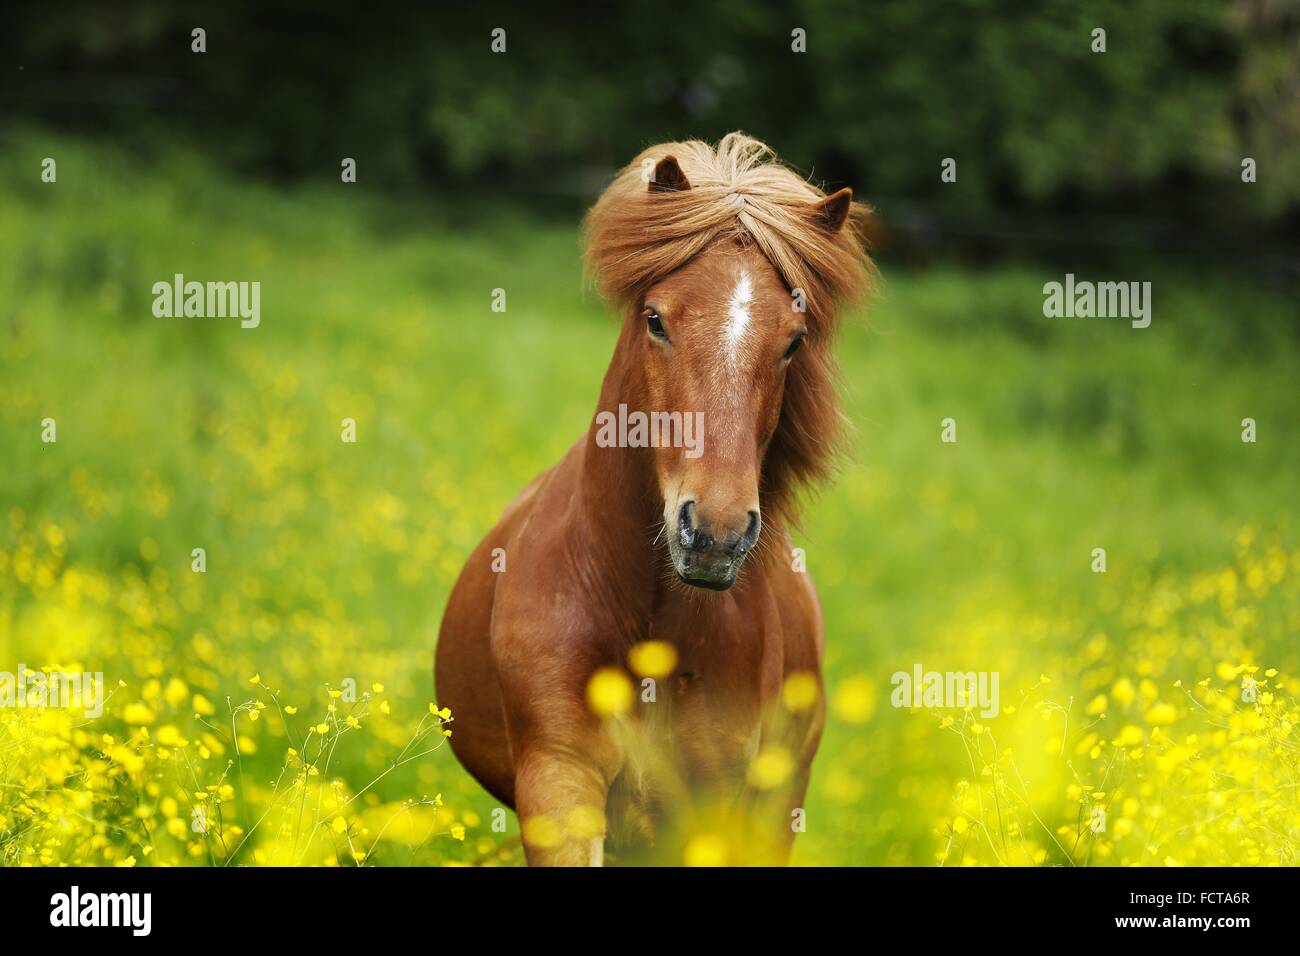 Icelandic horse Portrait Stock Photo